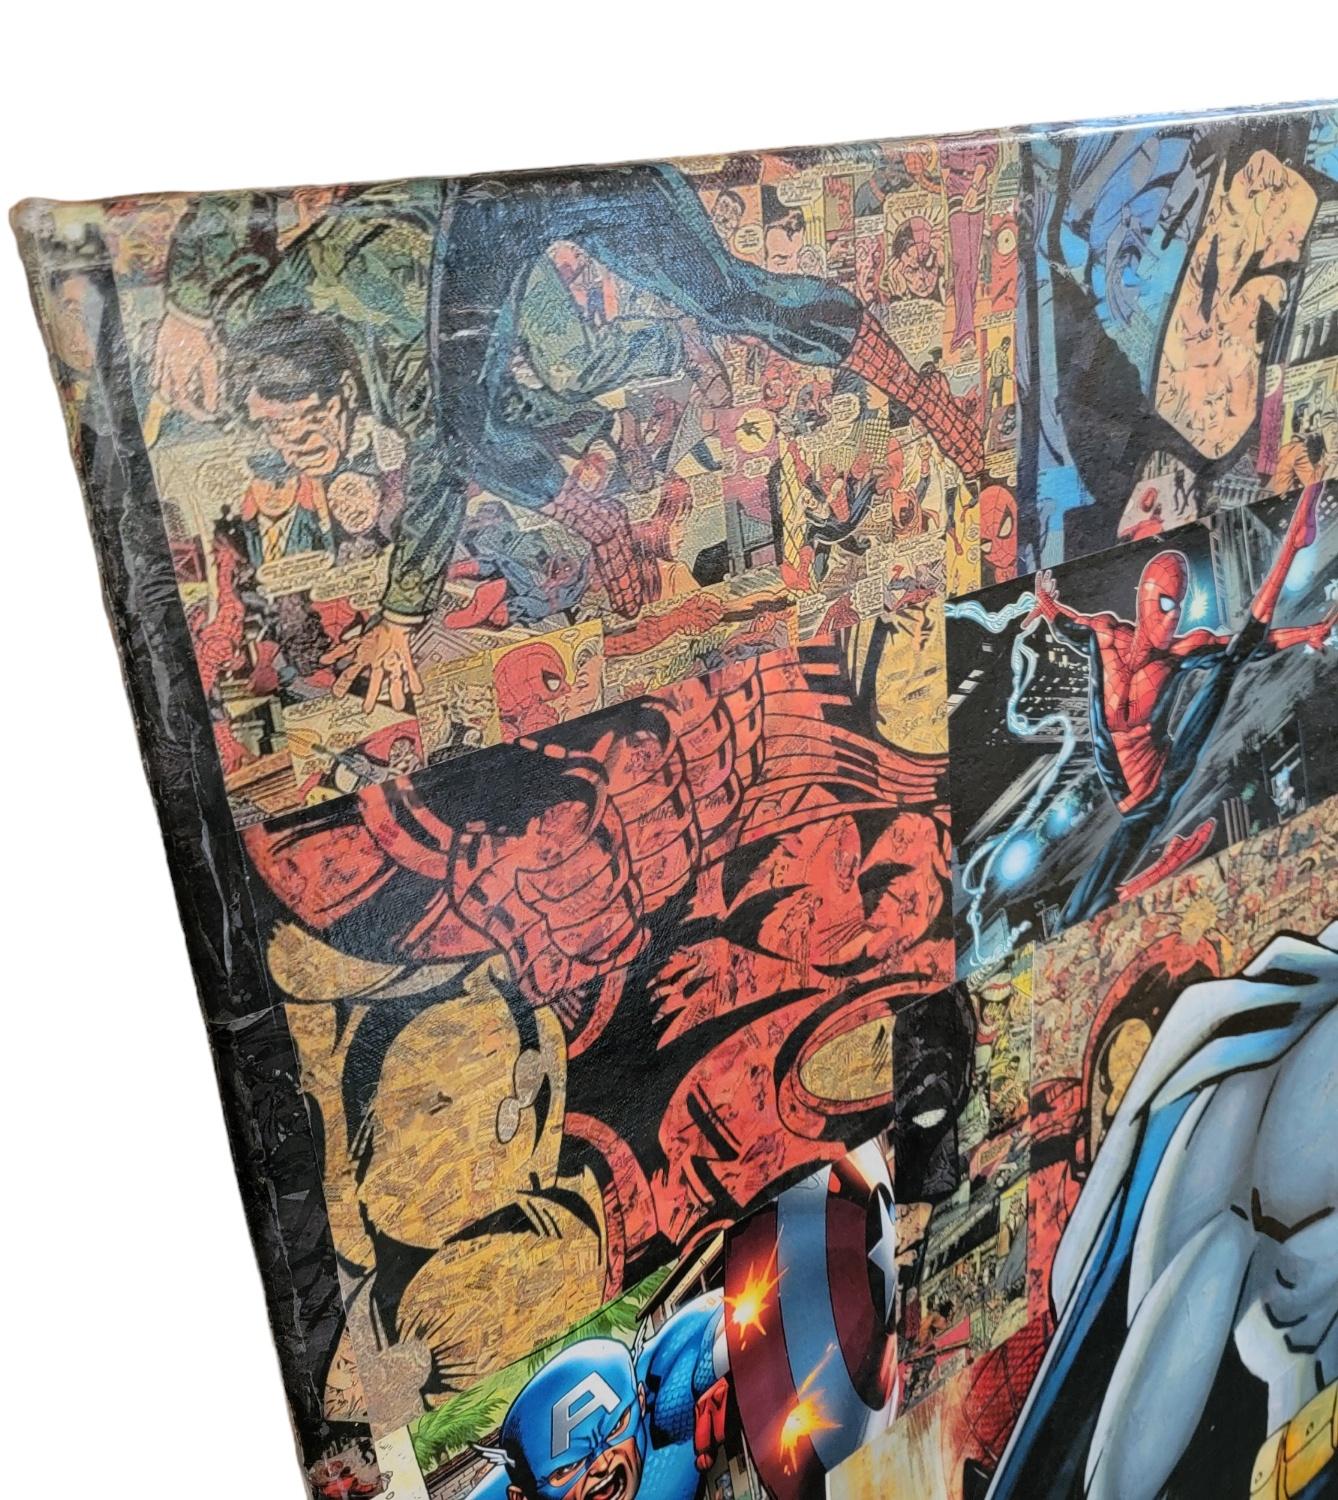 Großes Comic Buch Cut Outs Poster mit handgemalter Batman Figur im Vordergrund. Viele verschiedene Kunstwerke, die verwendet wurden, um den Hintergrund des Batman zu gestalten. Maße: ca. 54b x 78h
